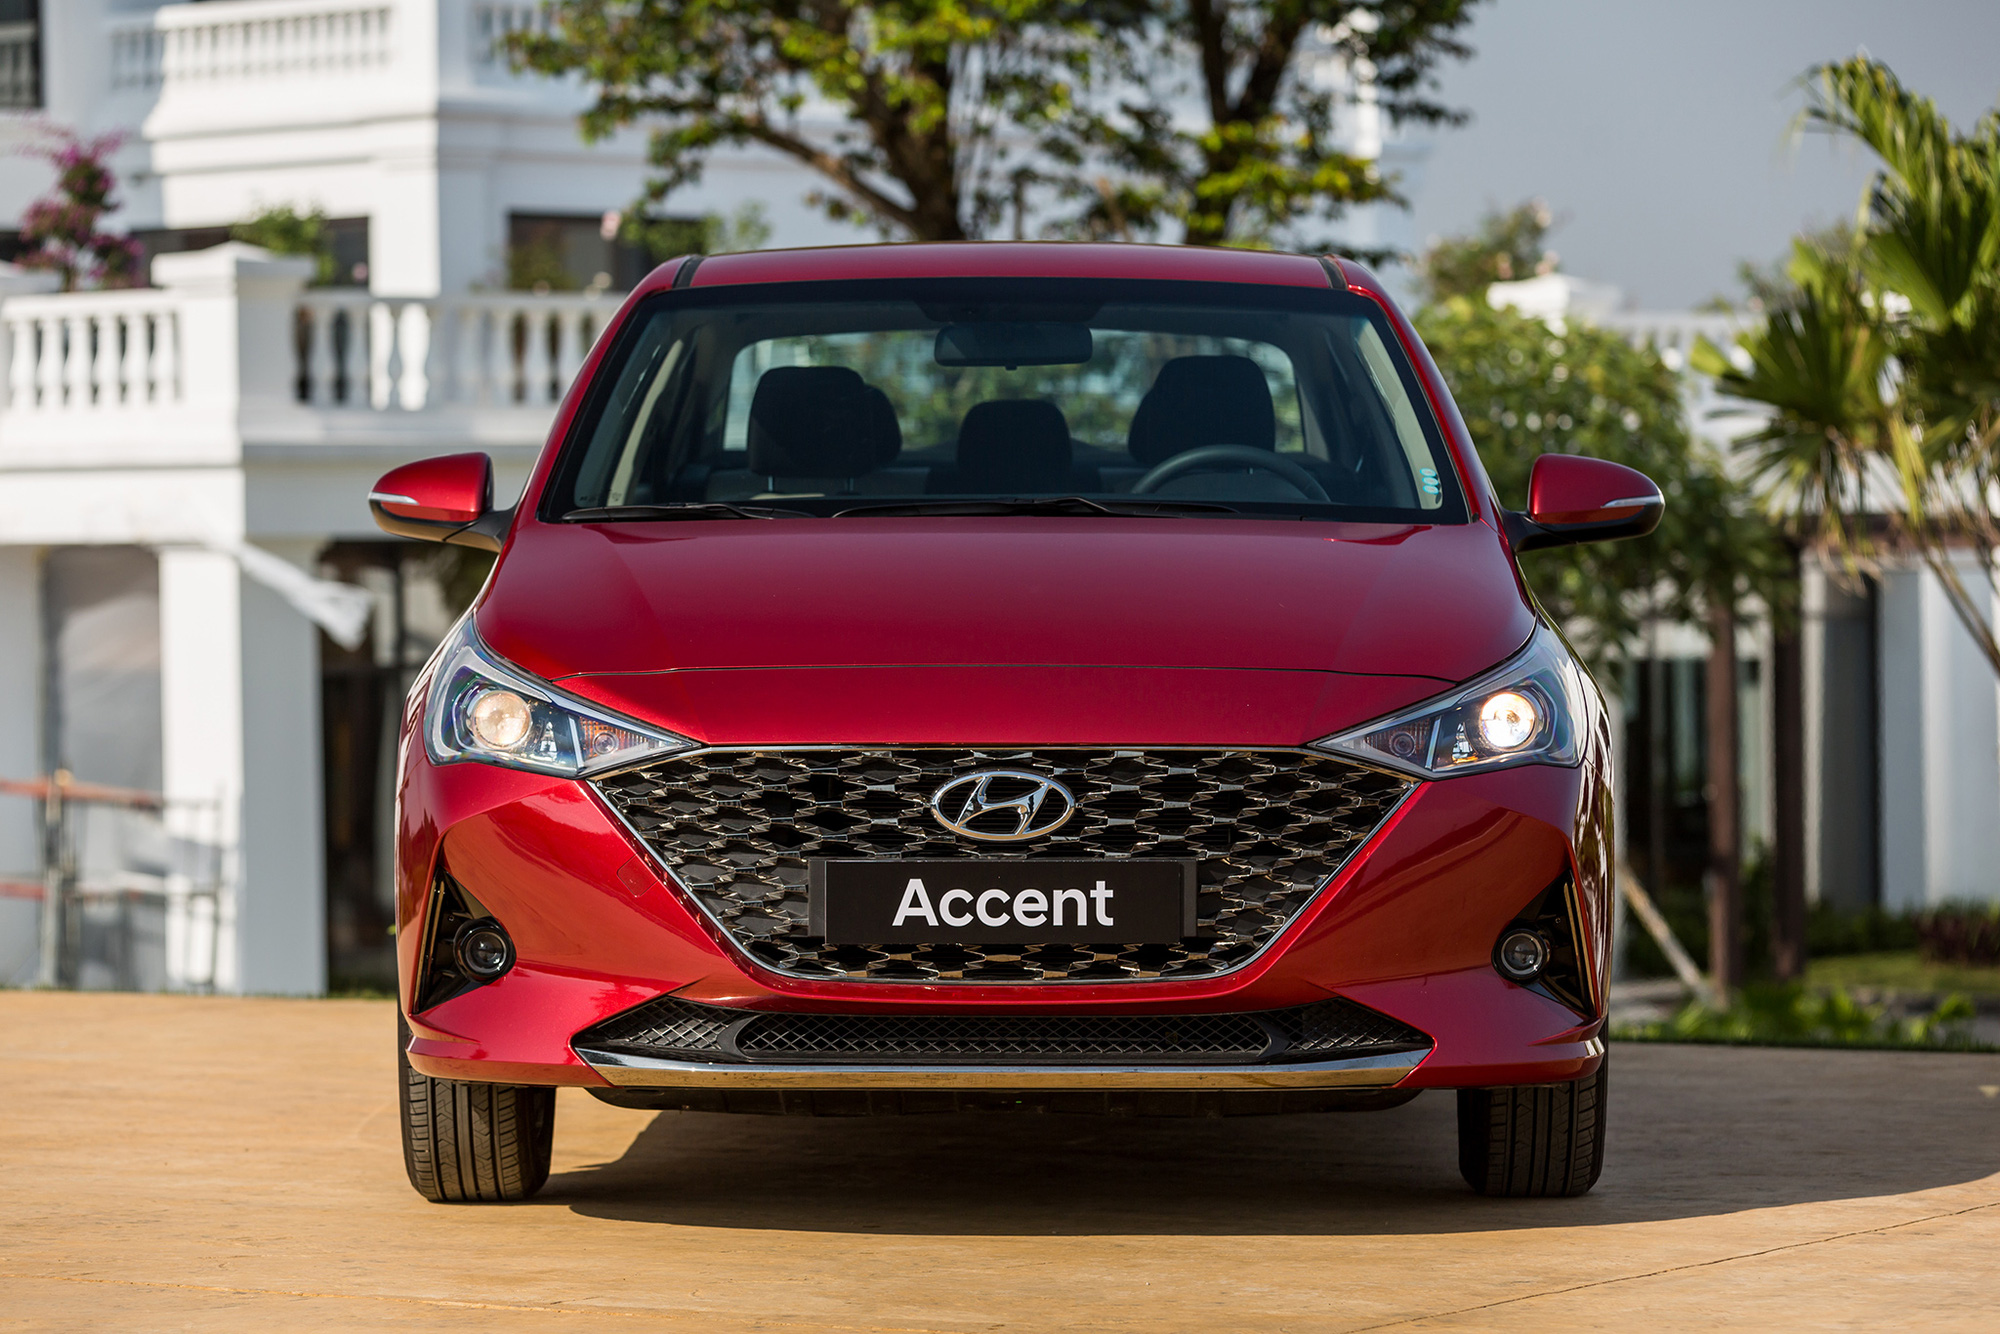 Chênh 116 triệu đồng, đây là sự khác biệt giữa 4 phiên bản Hyundai Accent 2021 tại thị trường Việt Nam - Ảnh 5.